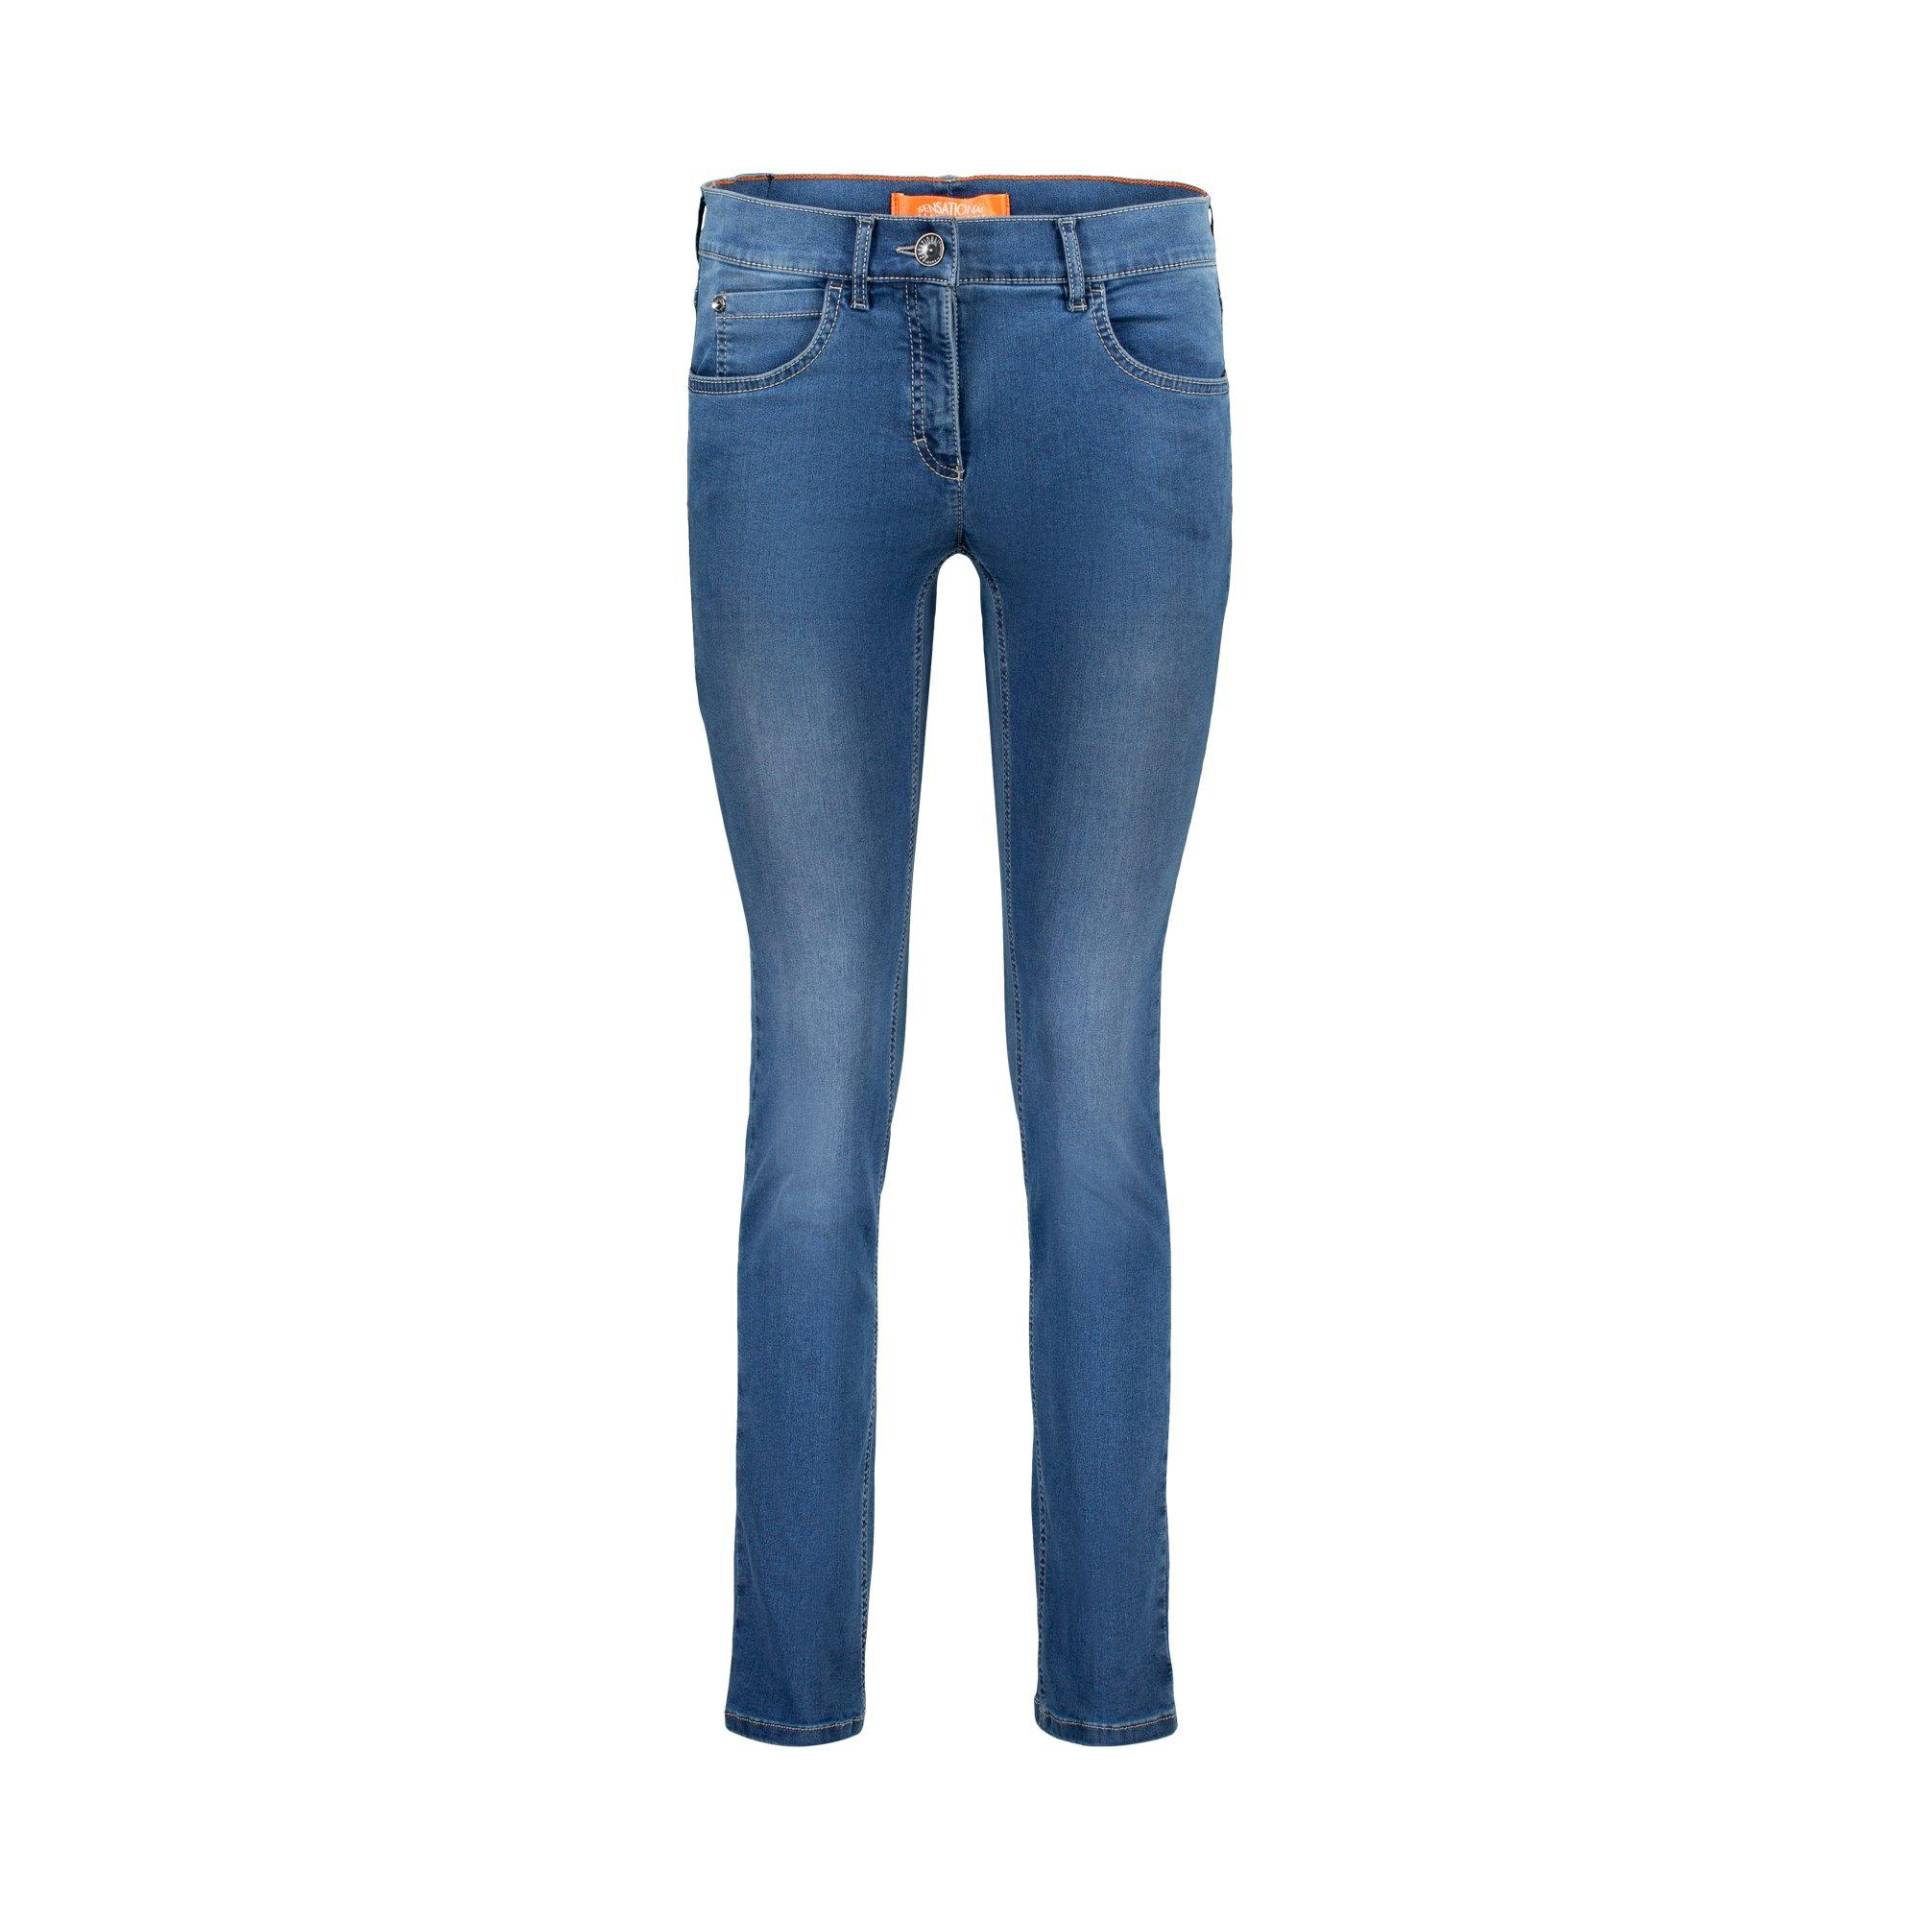 Jeans Slim Fit Damen Blau Denim L30/W44 von ZERRES